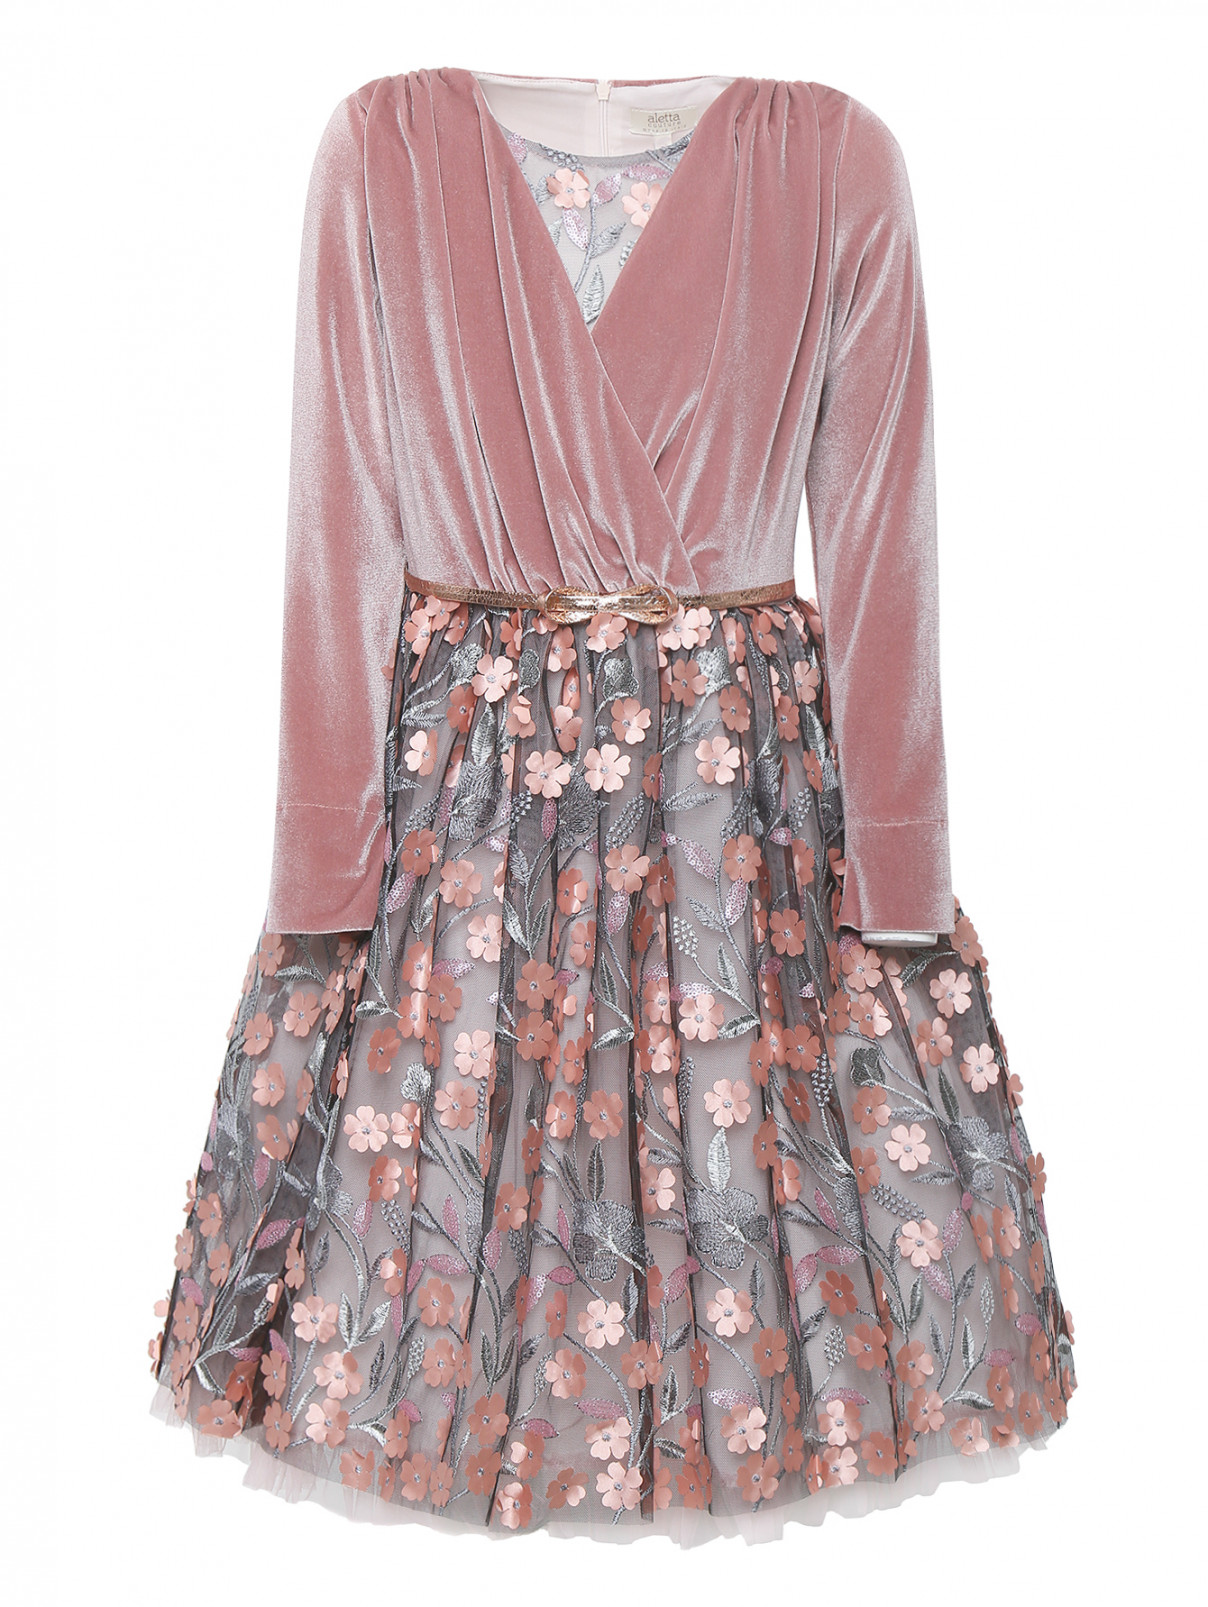 Платье бархатное с пышной юбкой из тюля Aletta Couture  –  Общий вид  – Цвет:  Розовый